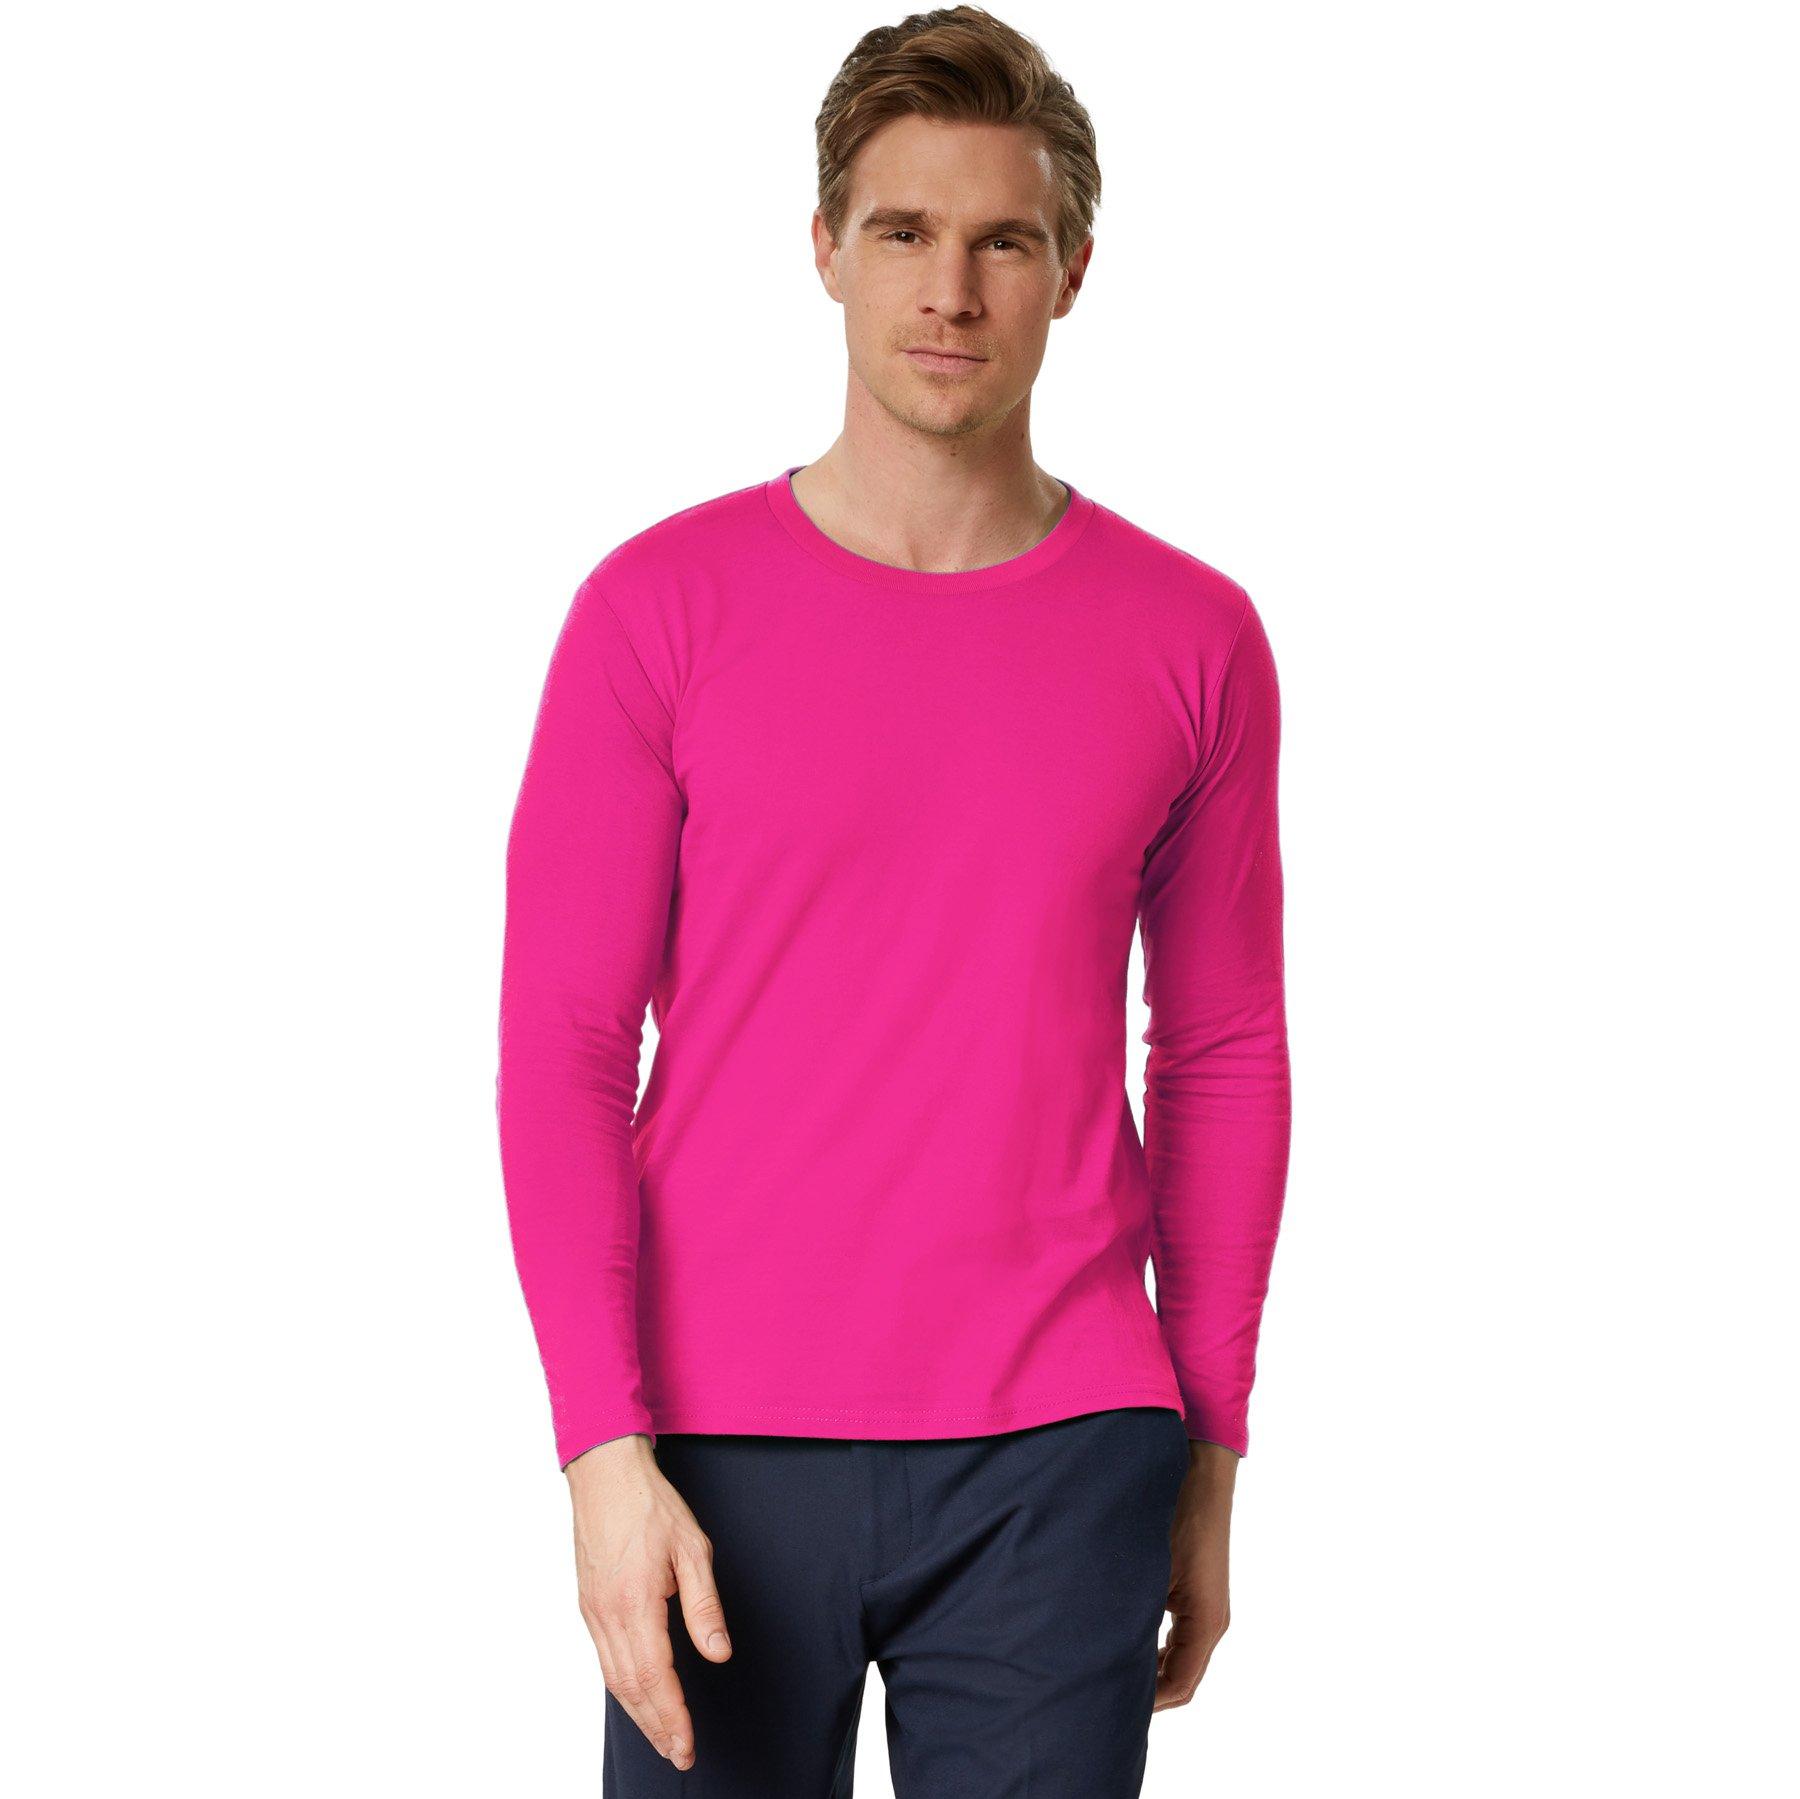 Langarm-shirt Männer Herren Pink L von Tectake